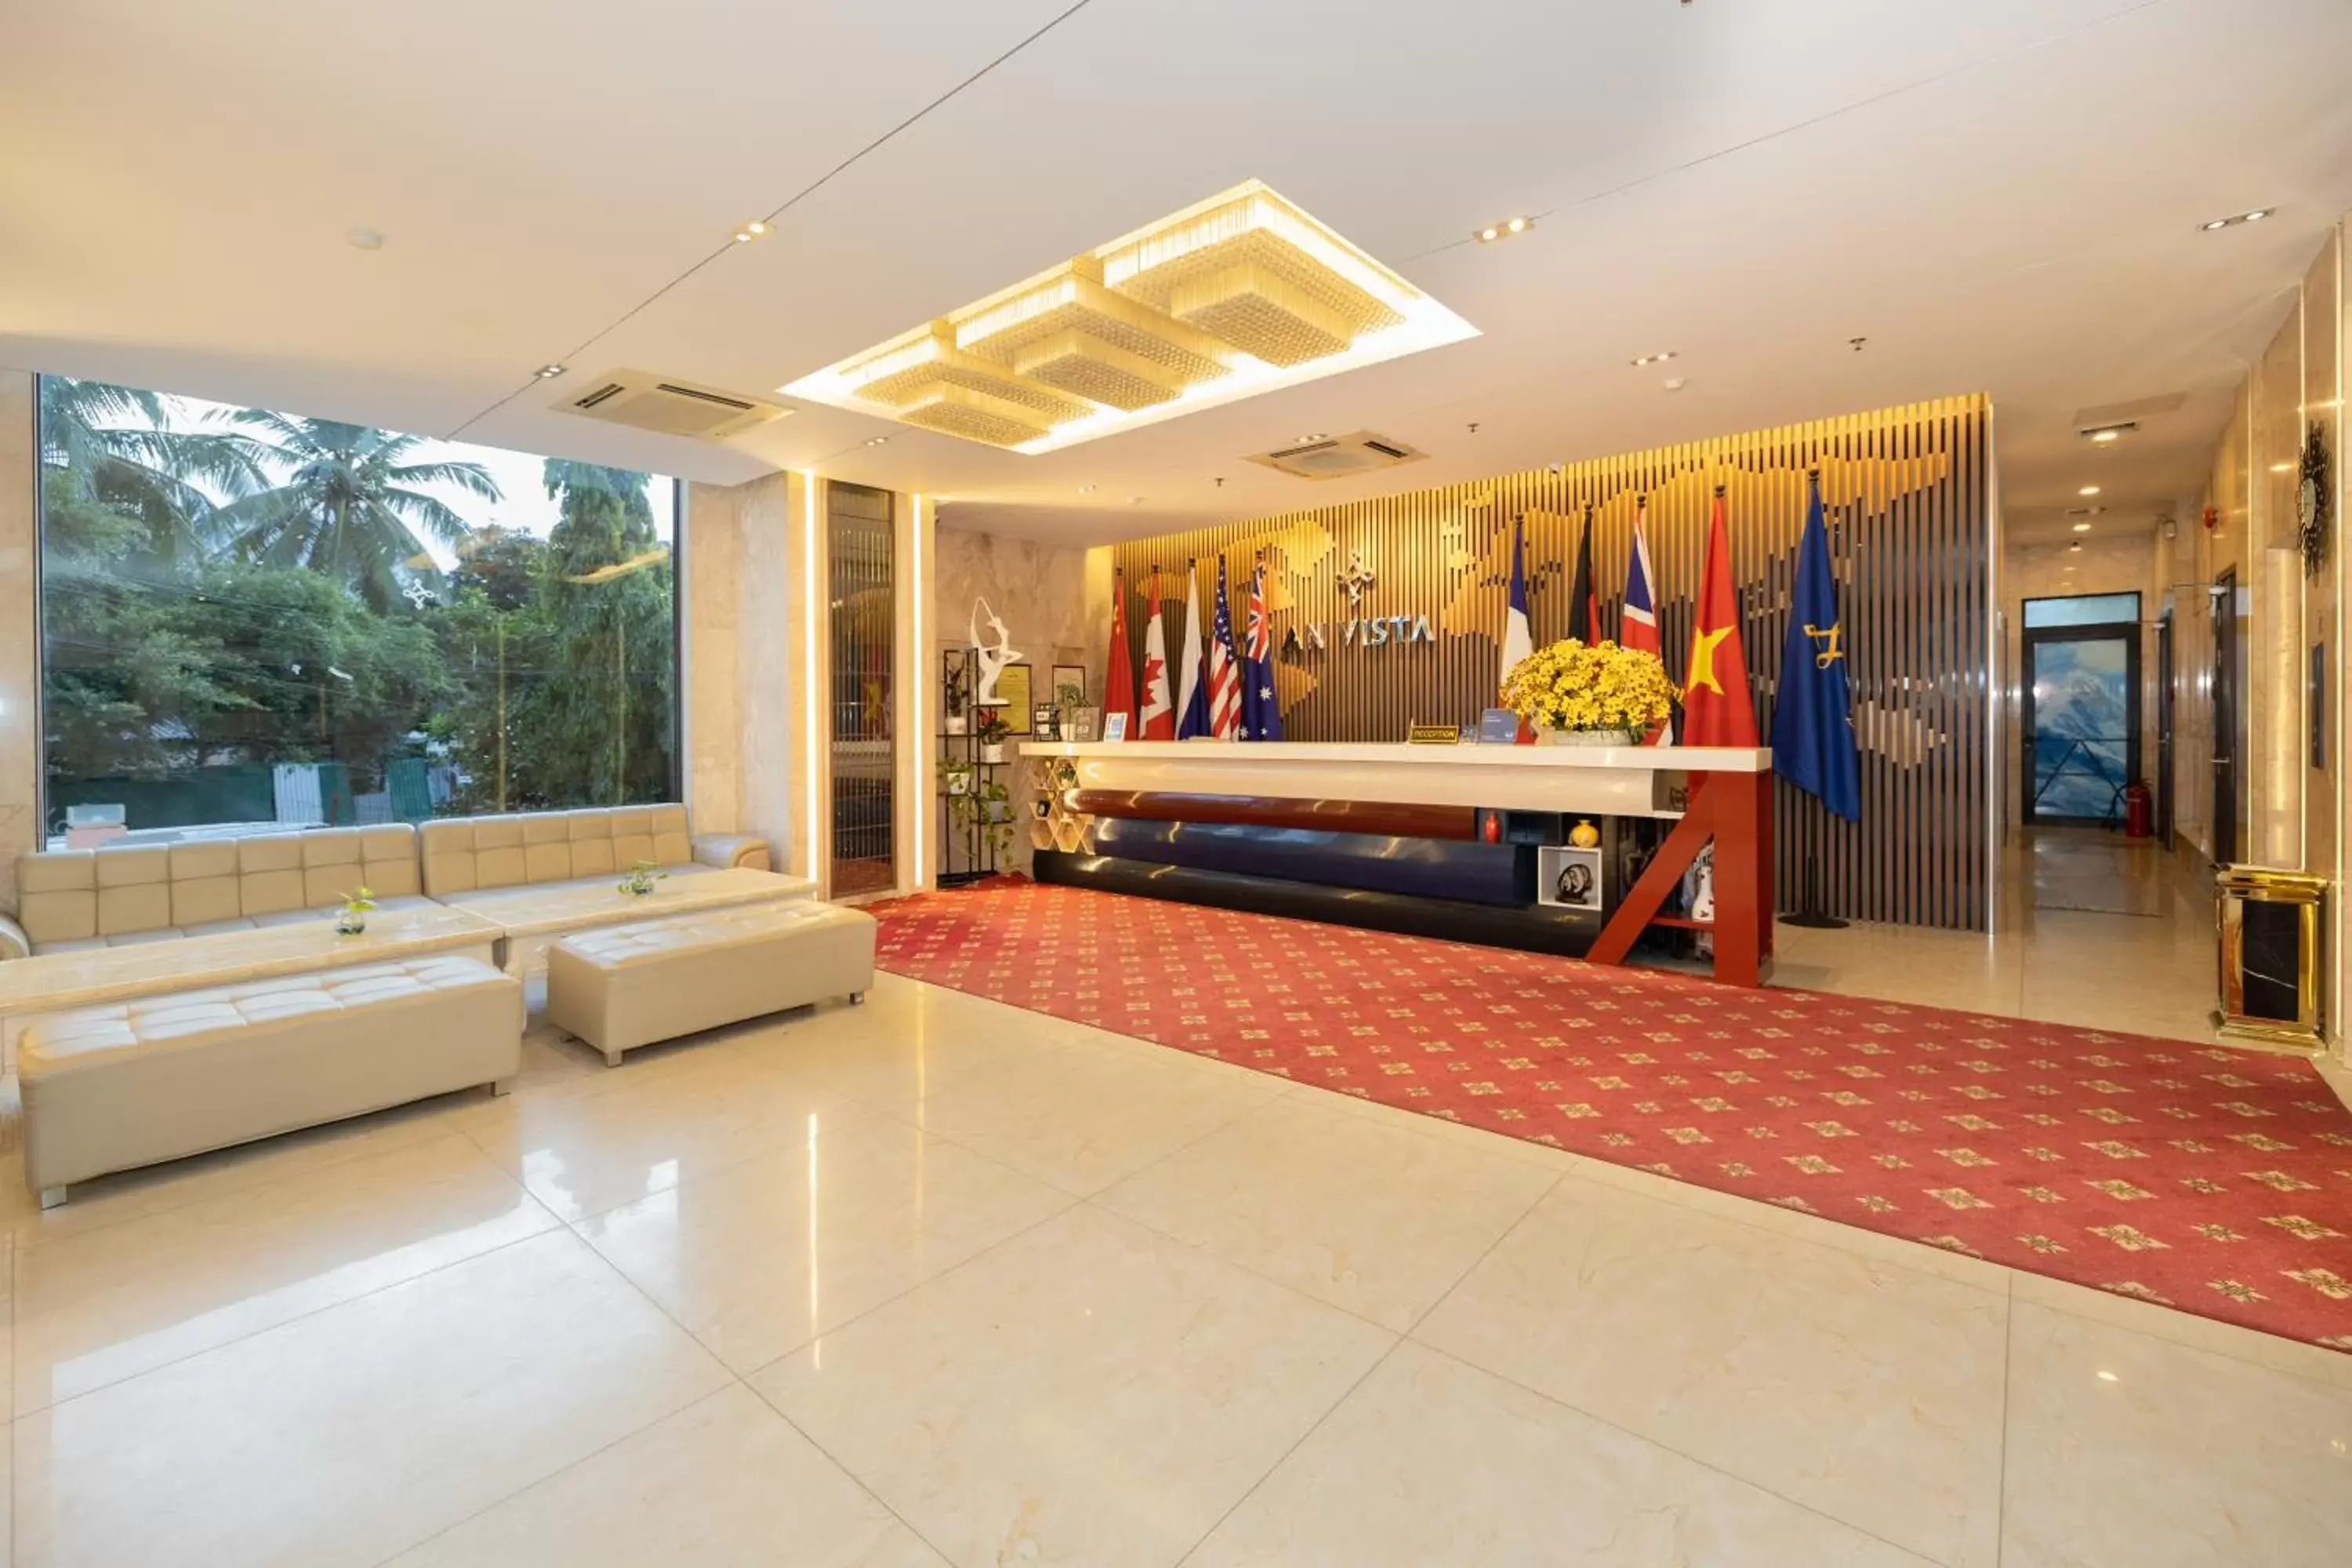 Lobby or reception, Lobby/Reception in An Vista Hotel